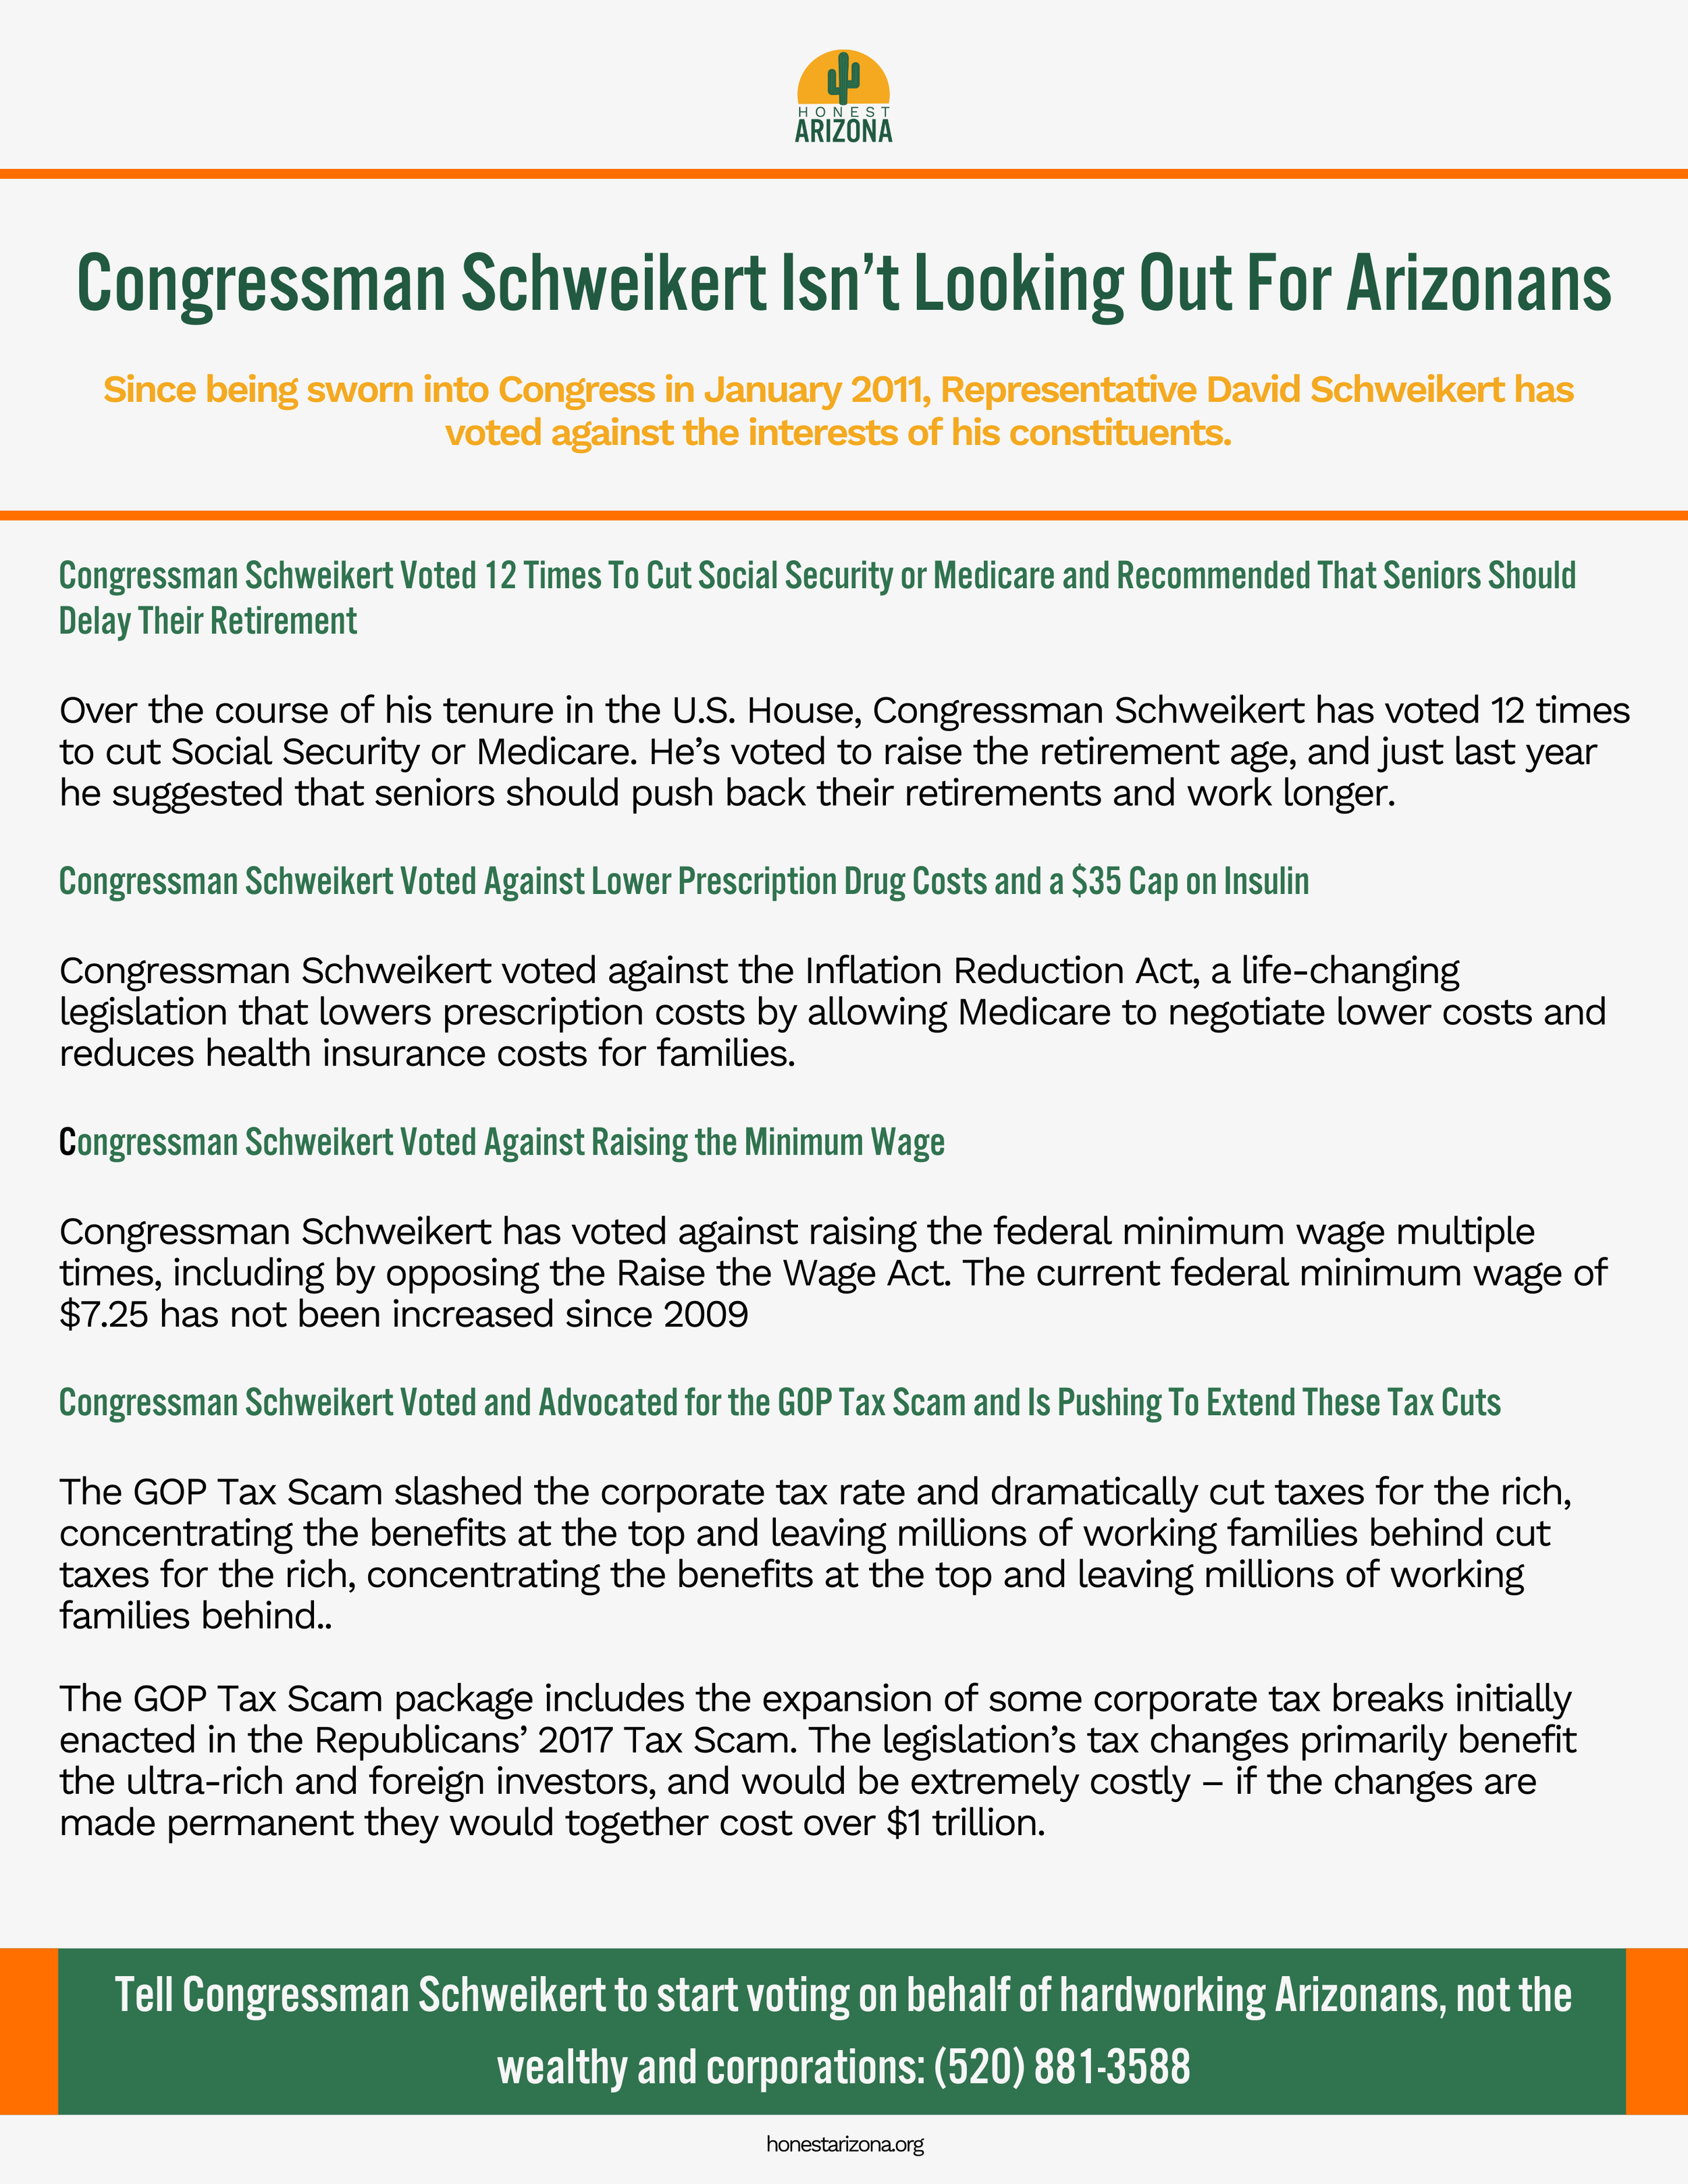 Congressman Schweikert Isn't Looking Out for Arizonans